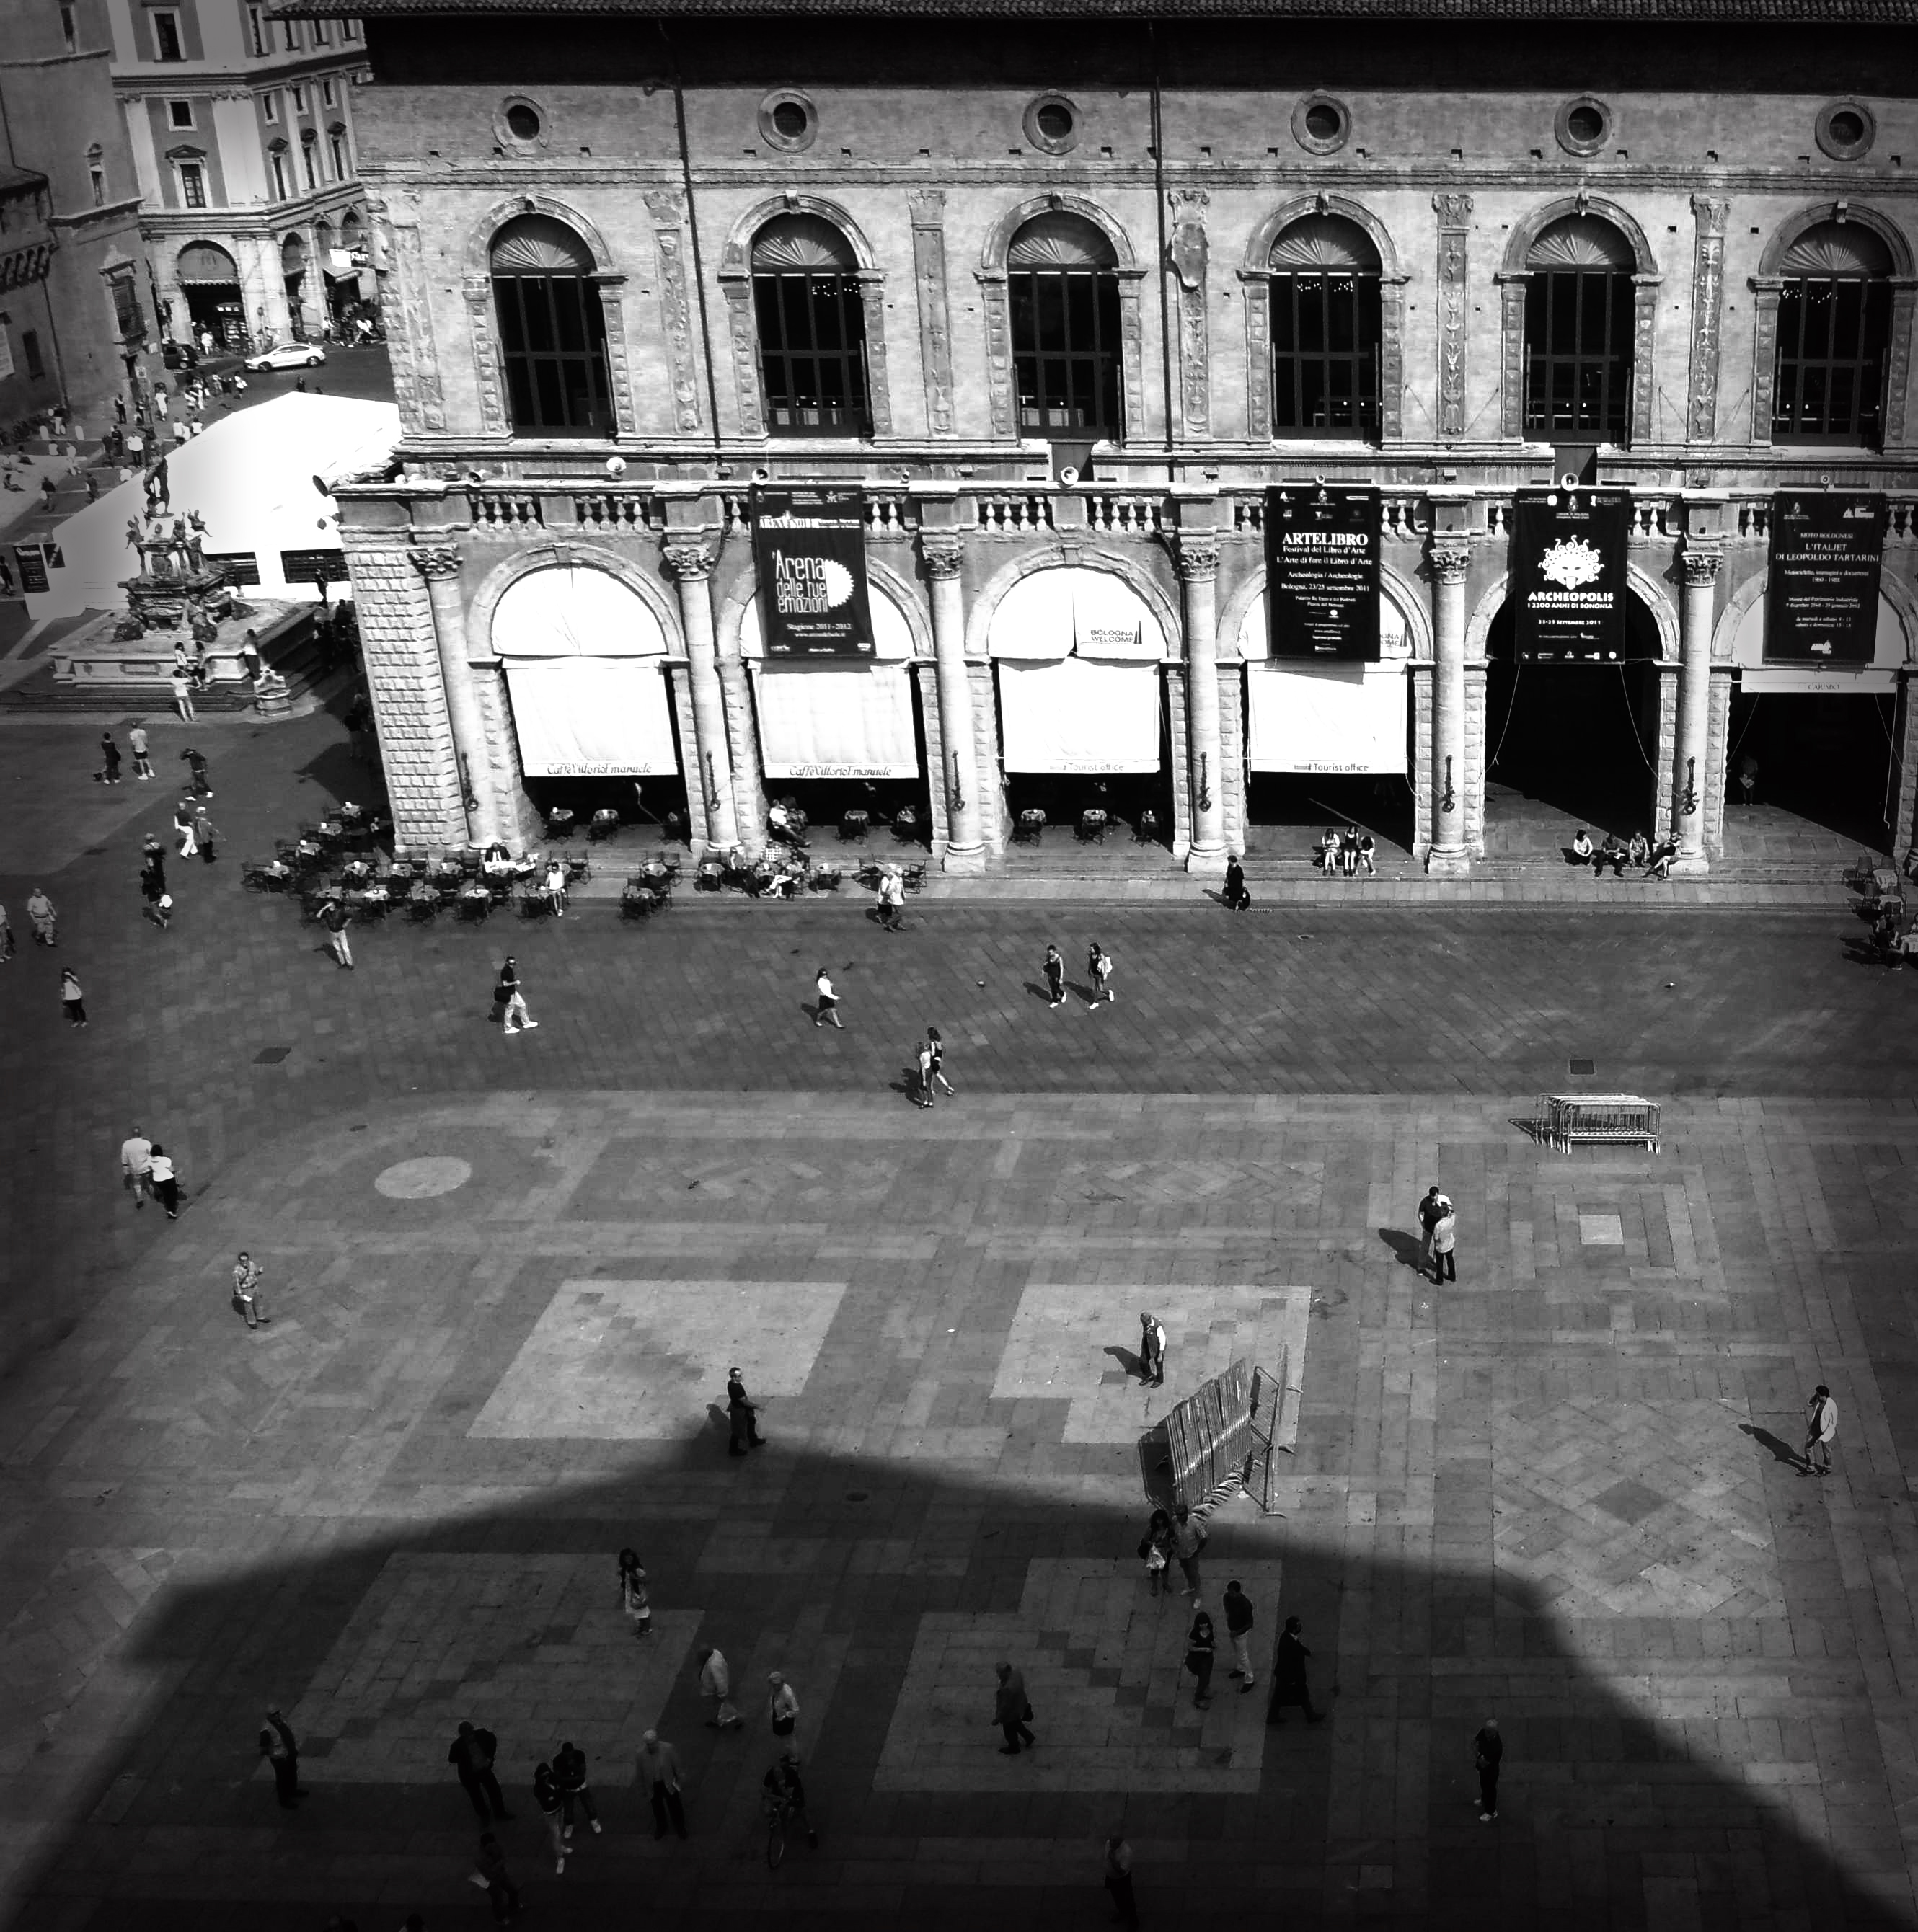 photo: https://upload.wikimedia.org/wikipedia/commons/0/07/Piazza_Maggiore_dalla_terrazza_di_San_Petronio.jpg